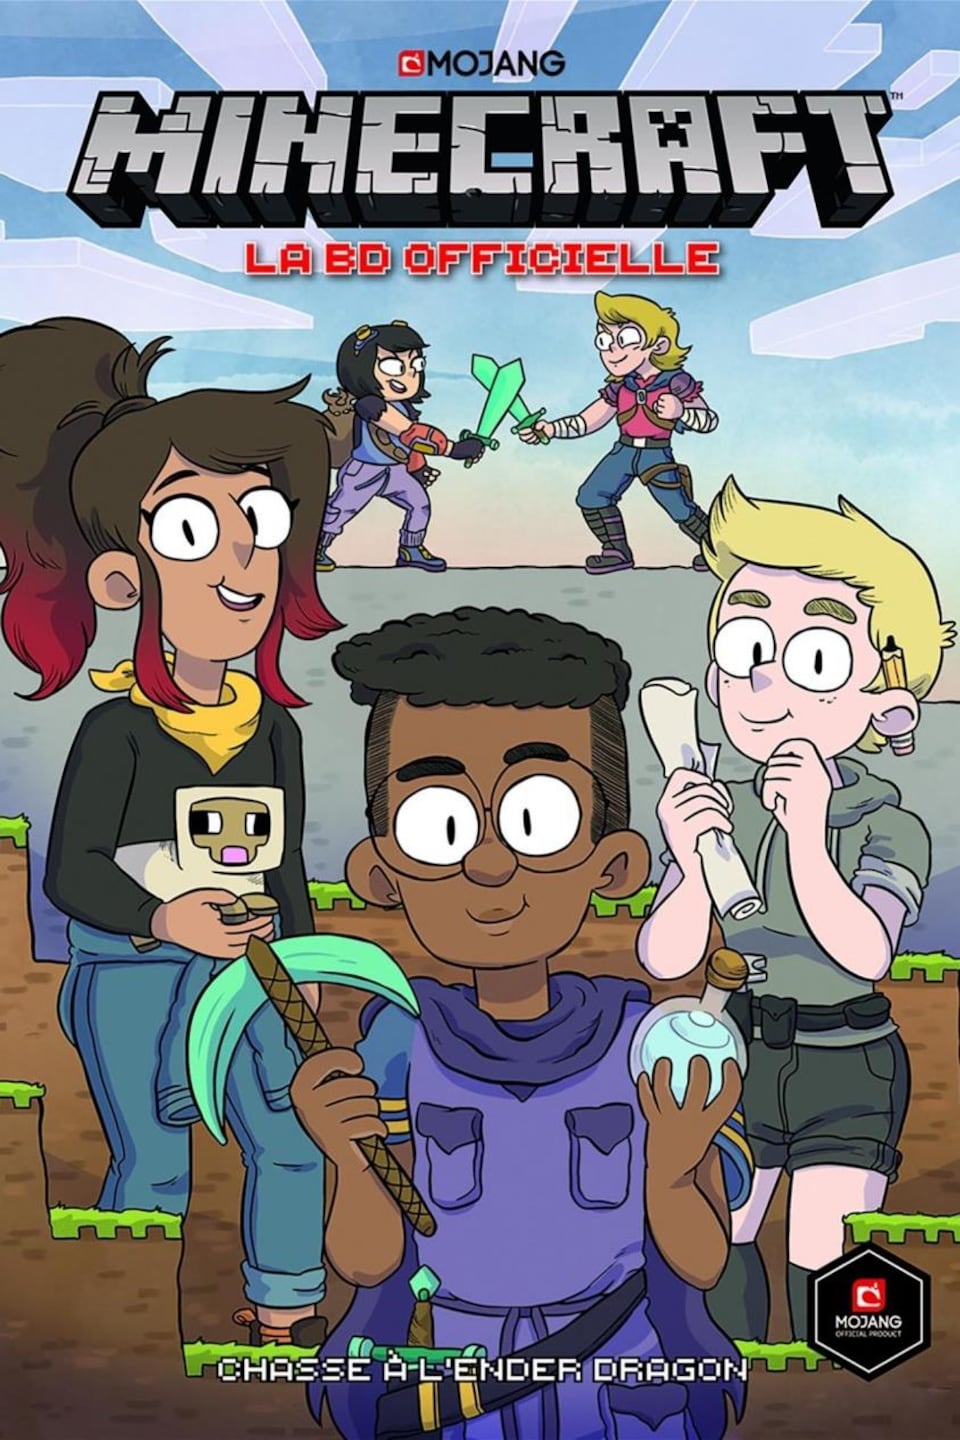 La couverture représente trois personnages : une fille et deux garçons, dont un à lunettes